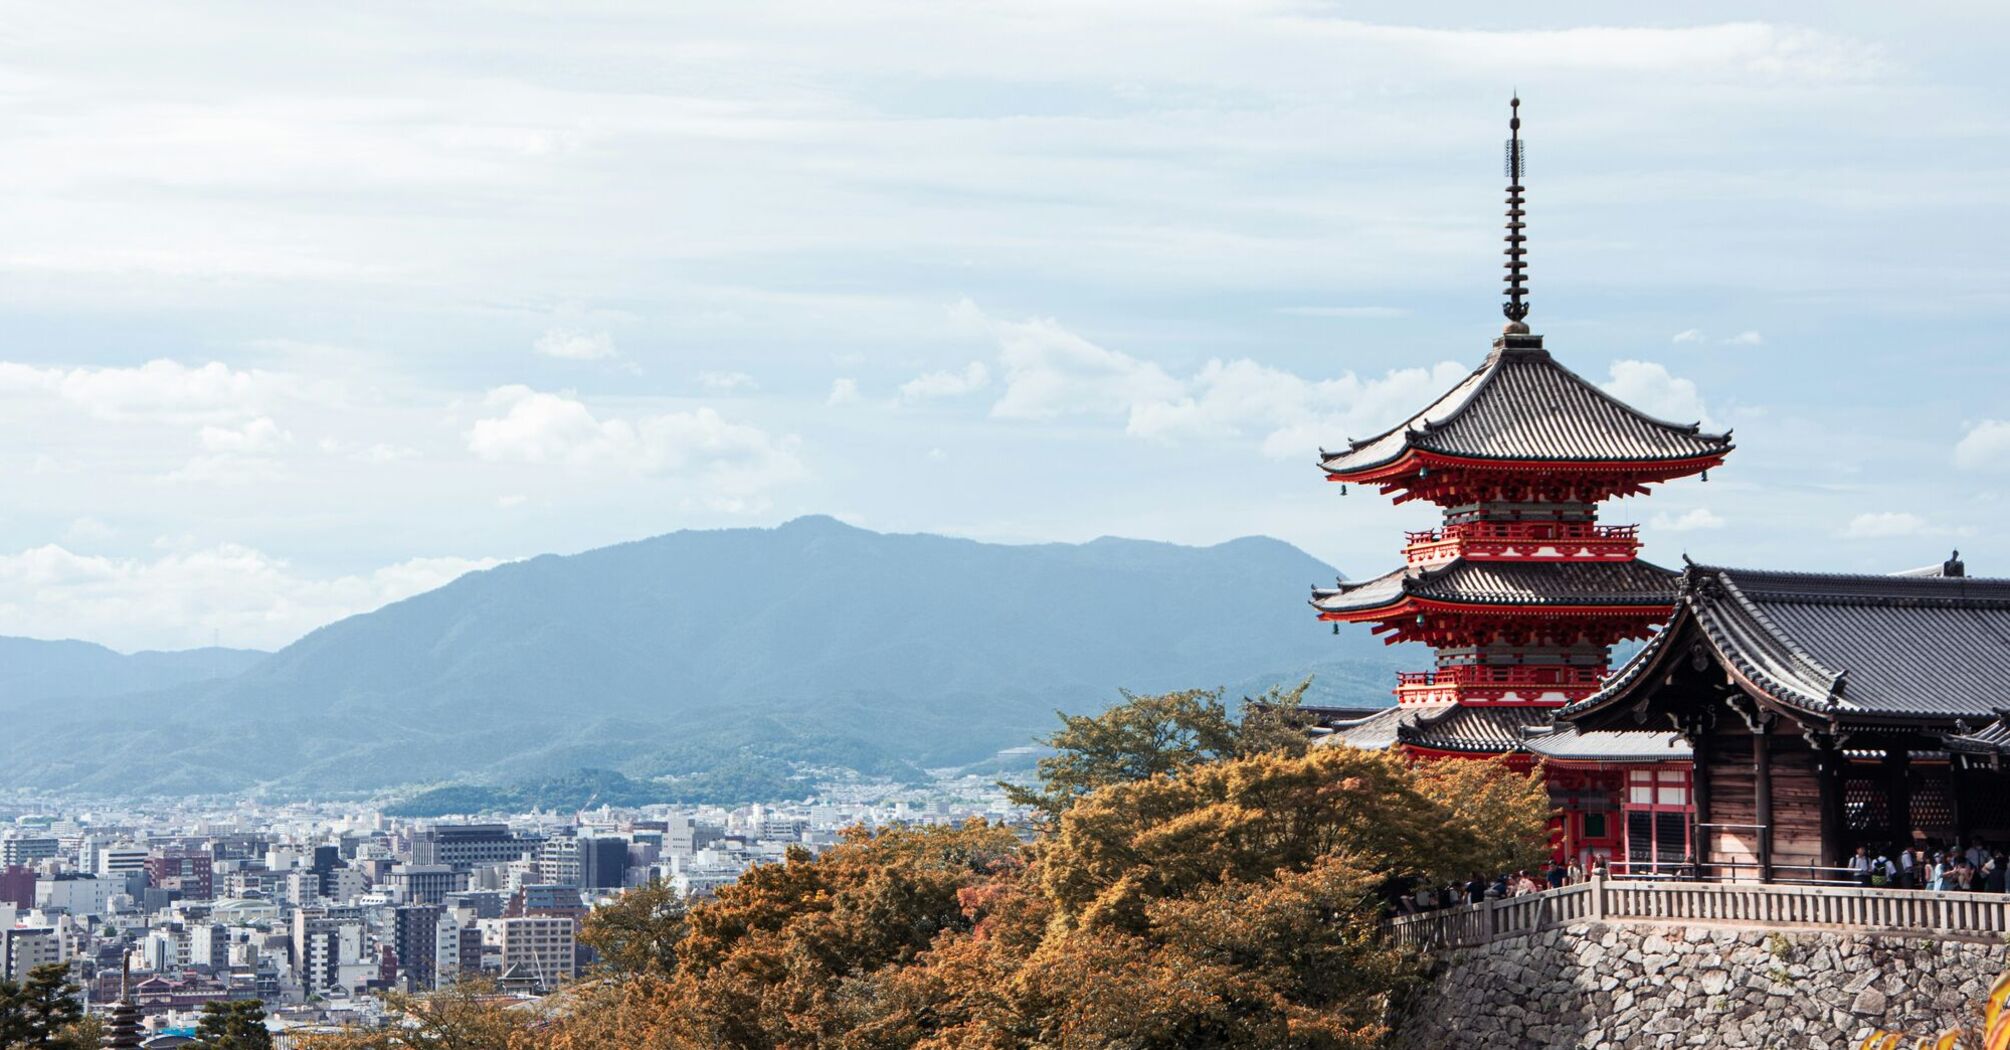 Revisit of Fushimi Inari Shrine